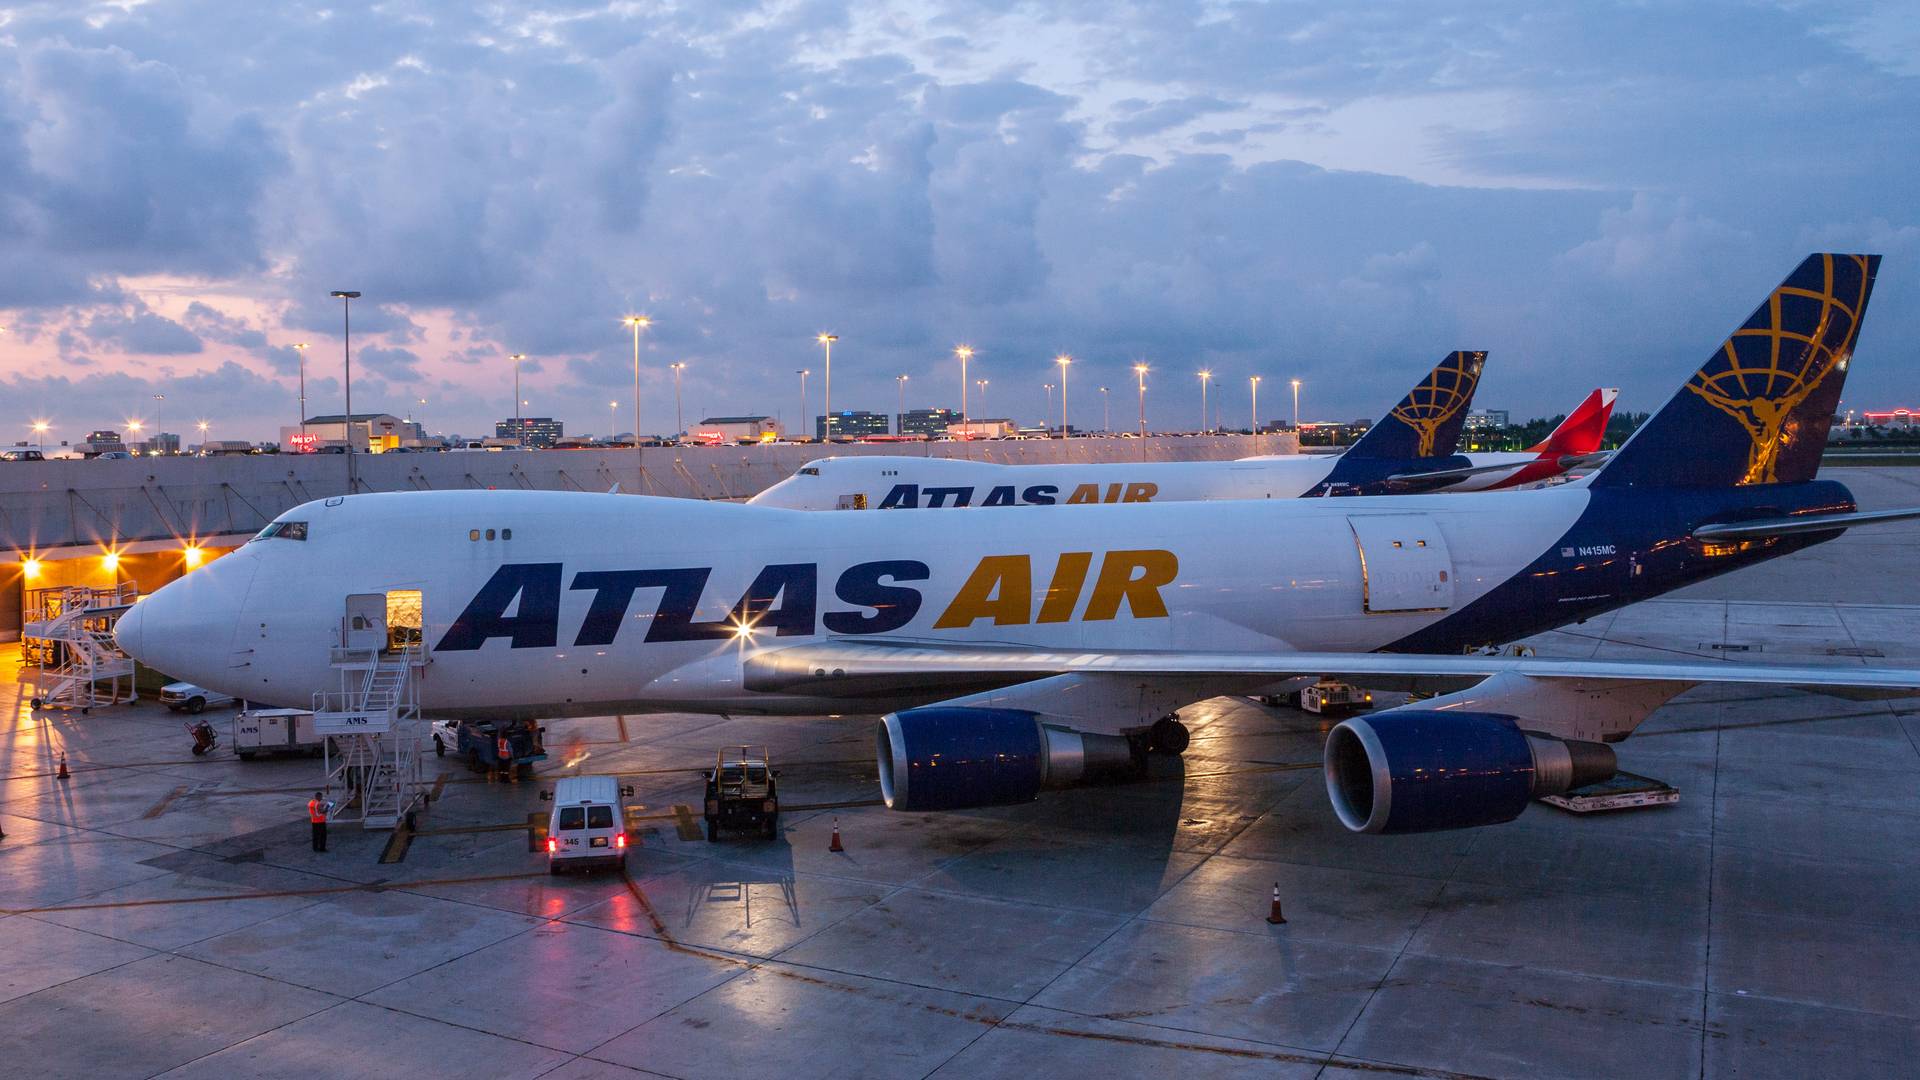 Incident: Atlas Air 747-8 Engine Failure Over Miami